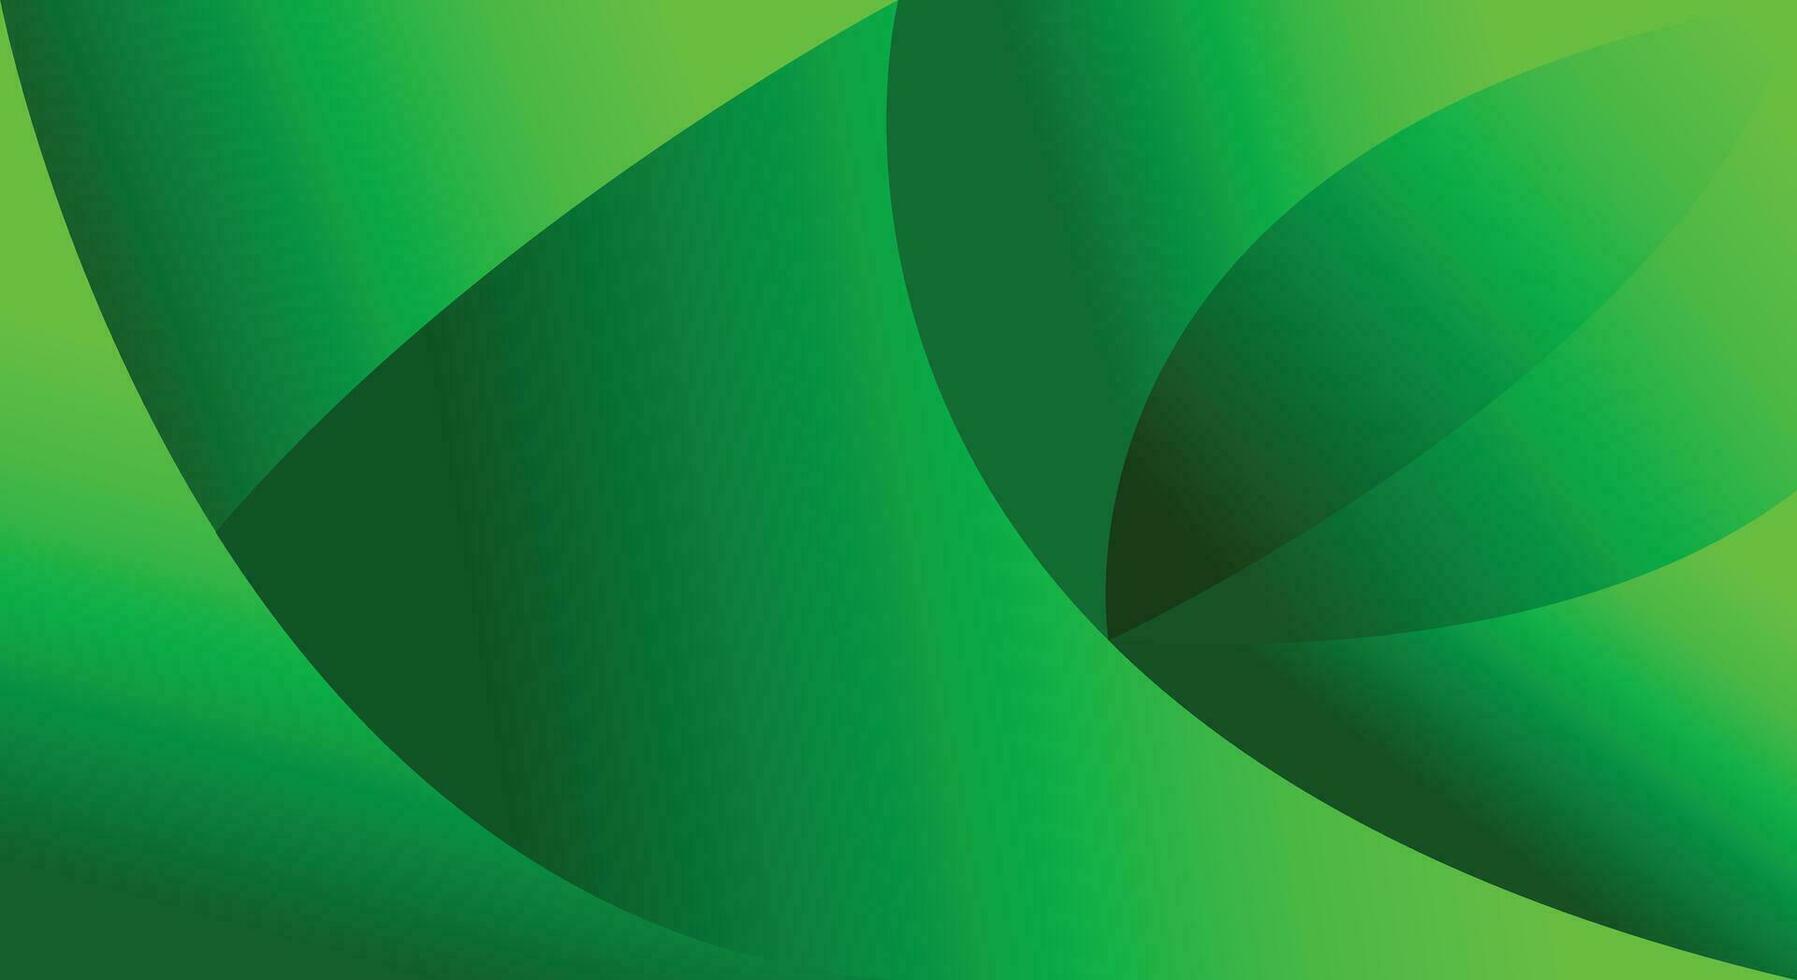 vektor bakgrund lyx modern 3d lutning abstrakt grön Färg